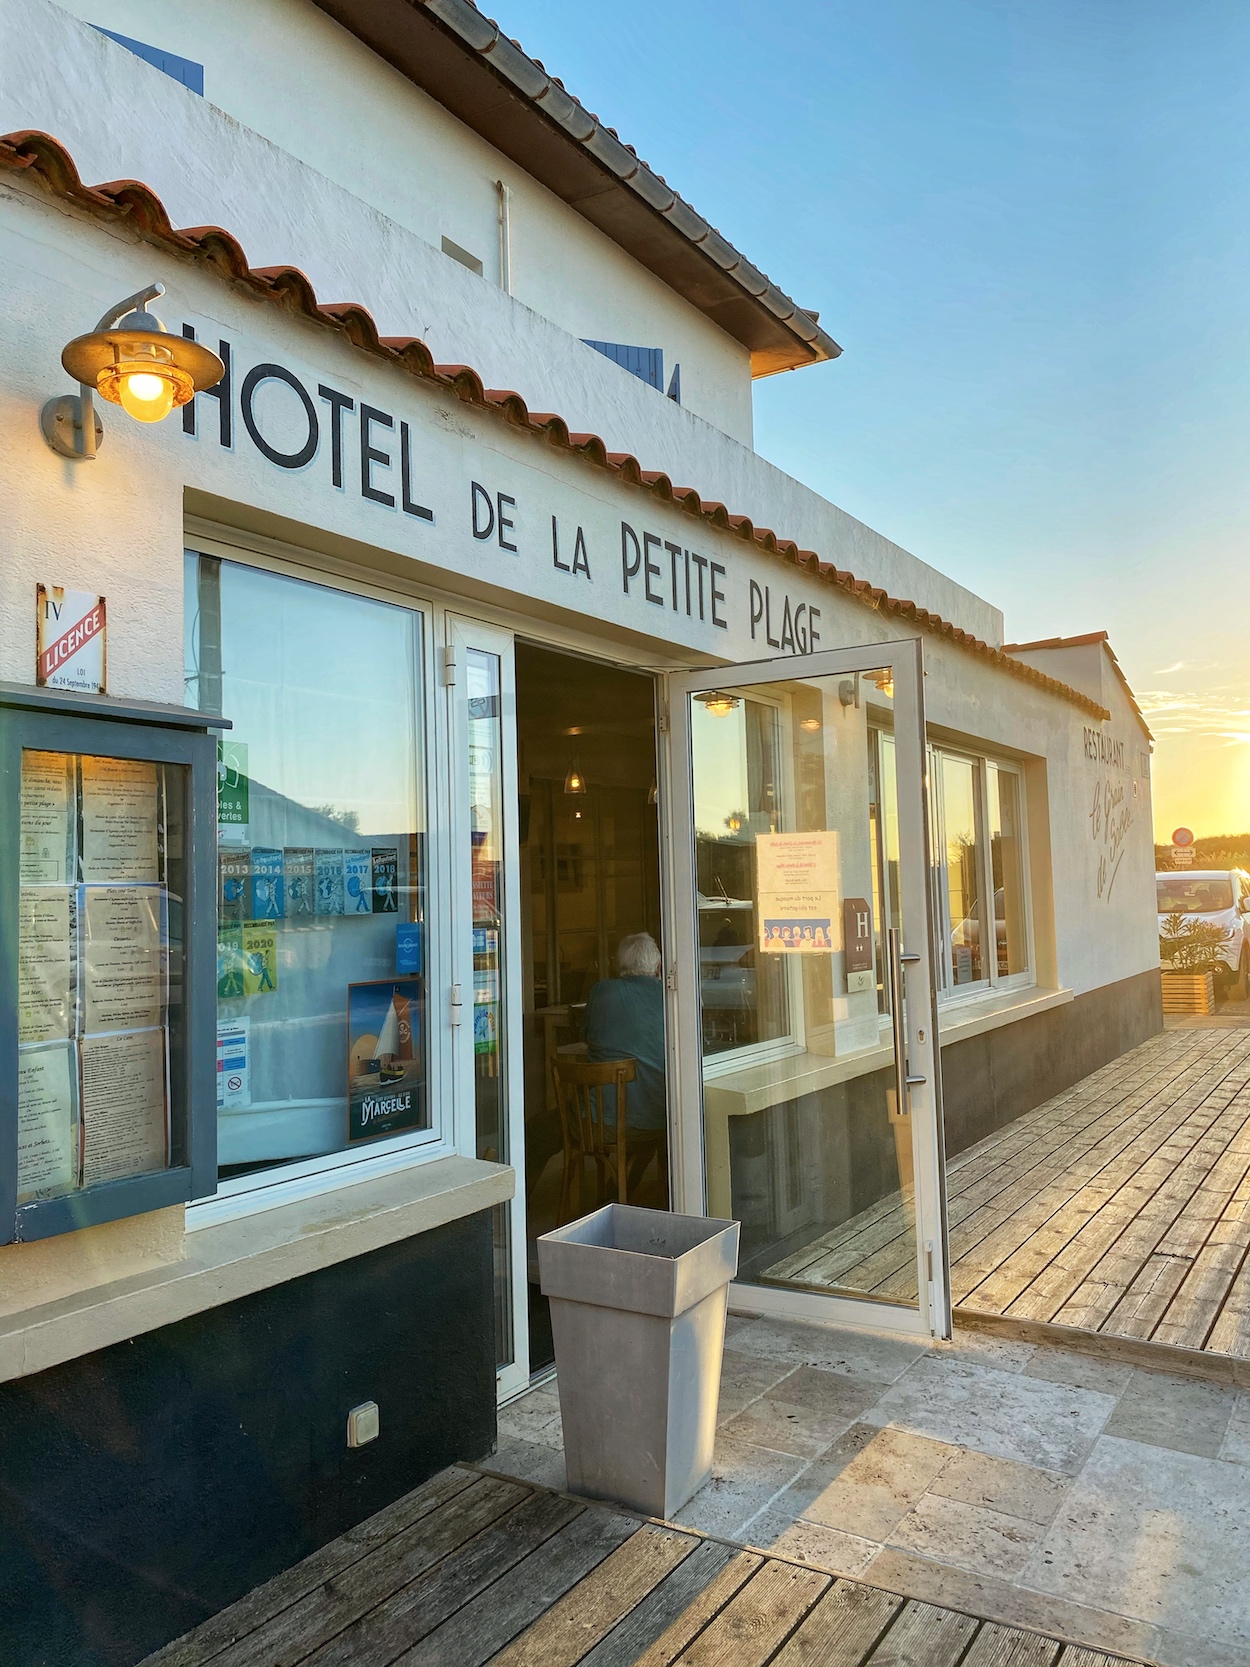 Hotel de la petite plage Oleron